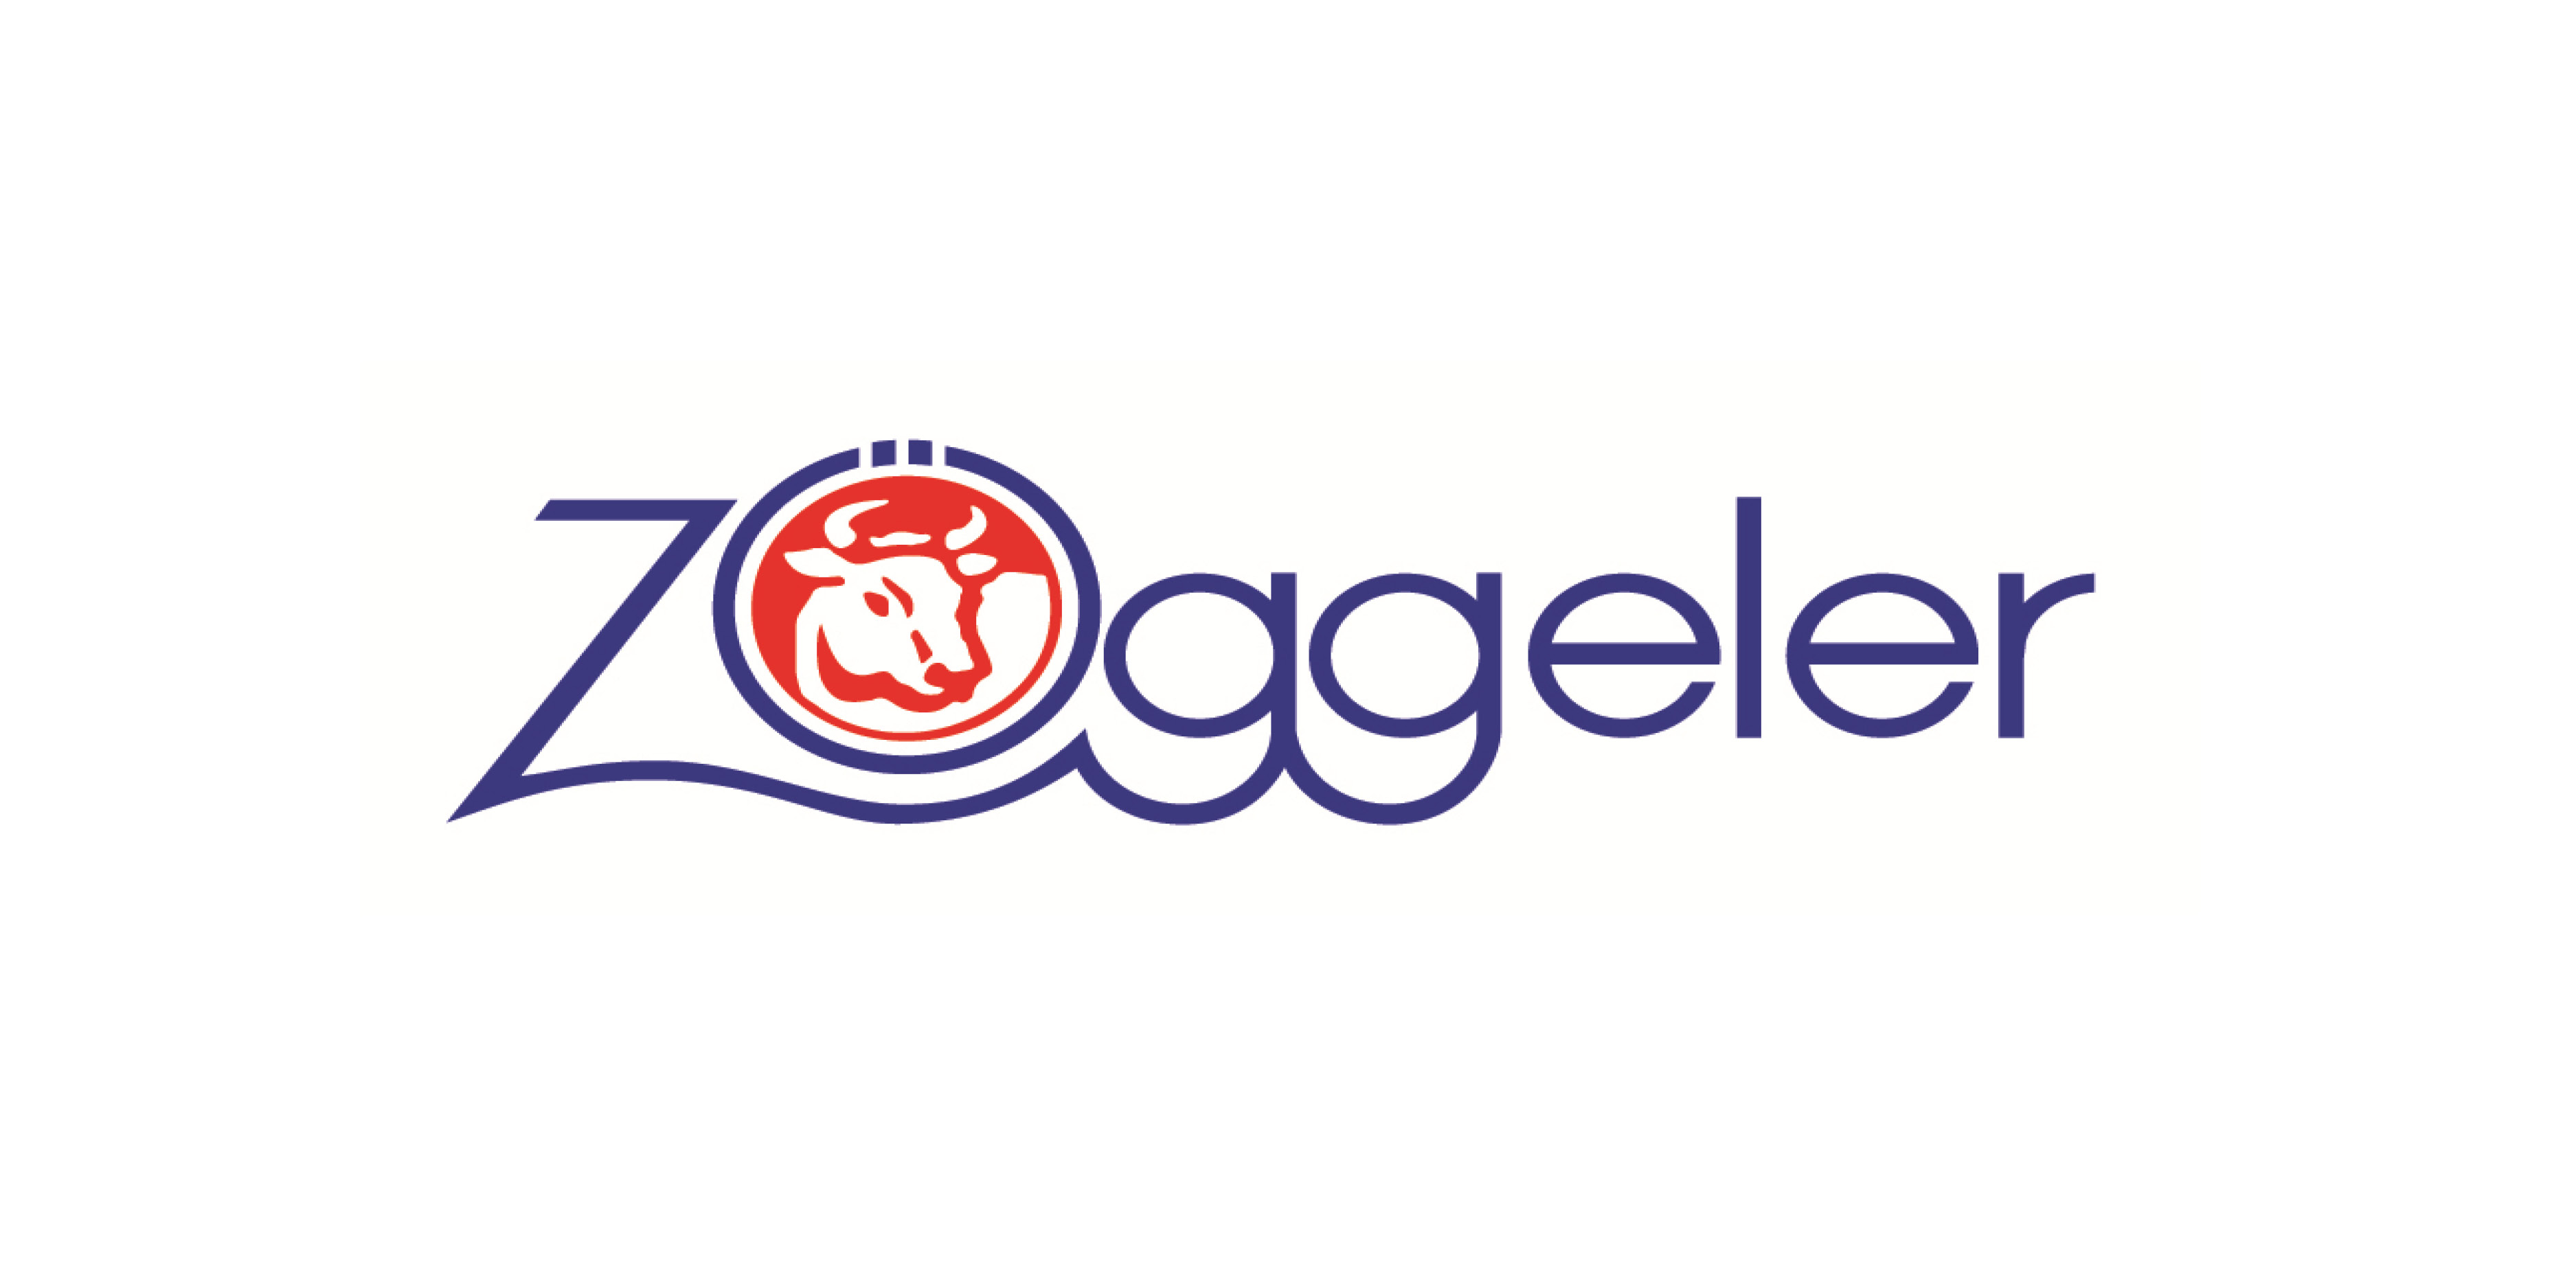 Zöggeler Franz & Co KG | F. & Co. sas